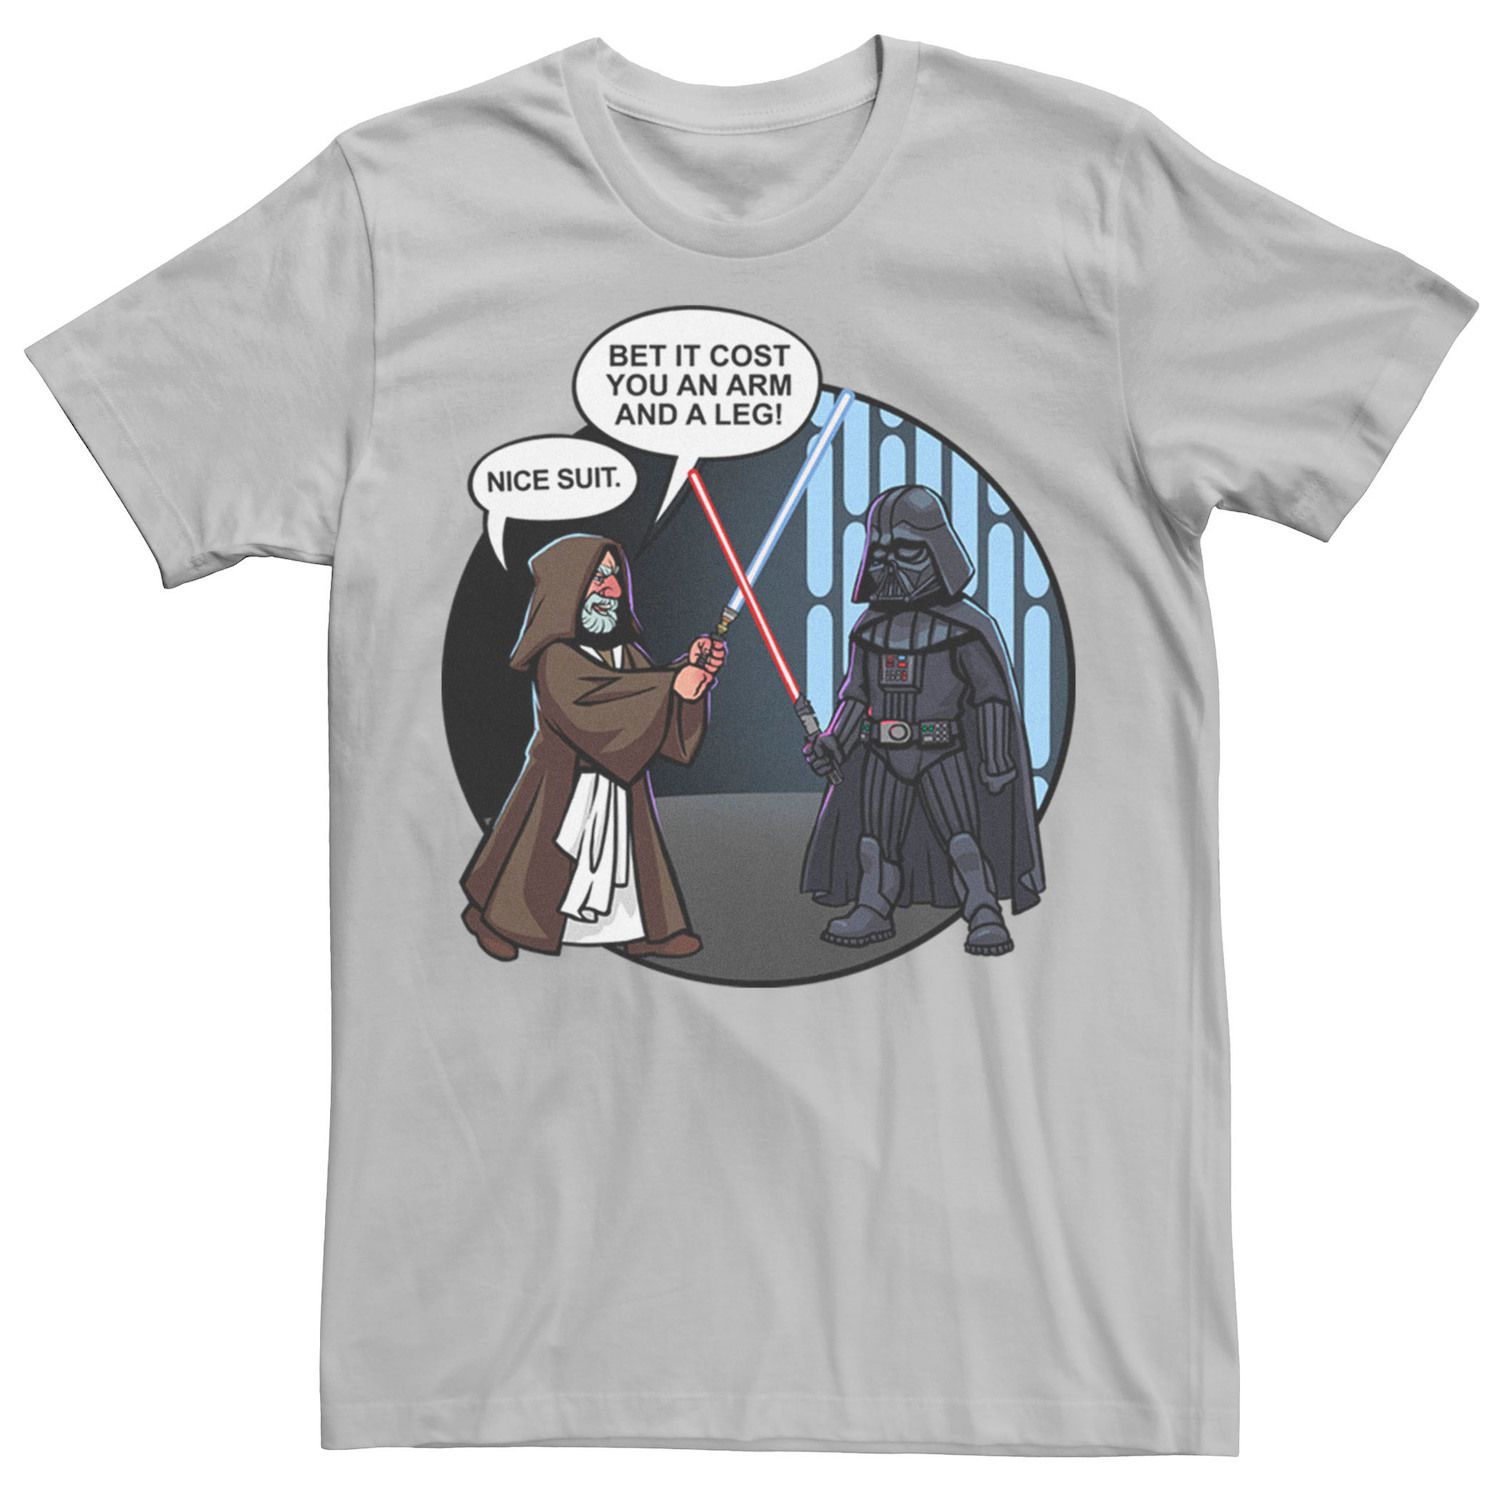 Мужская футболка с надписью «Звездные войны Дарт Вейдер и Оби-Ван Кеноби» Star Wars, серебристый